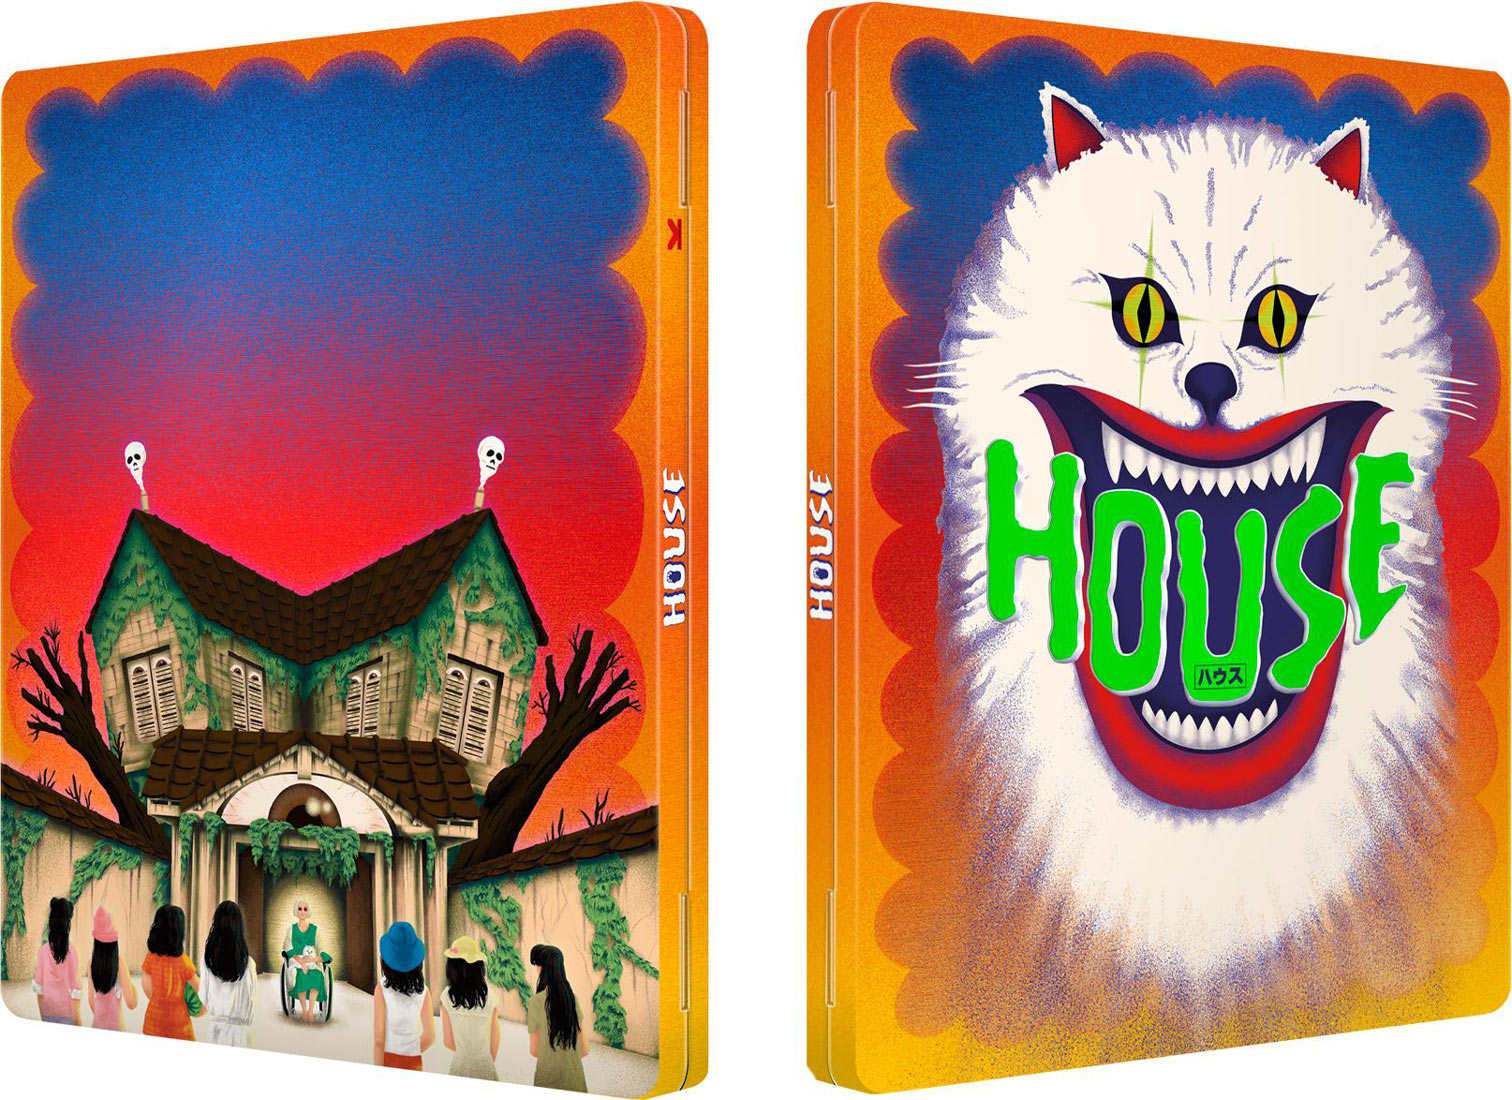 House (1977) - Blu-ray FuturePak